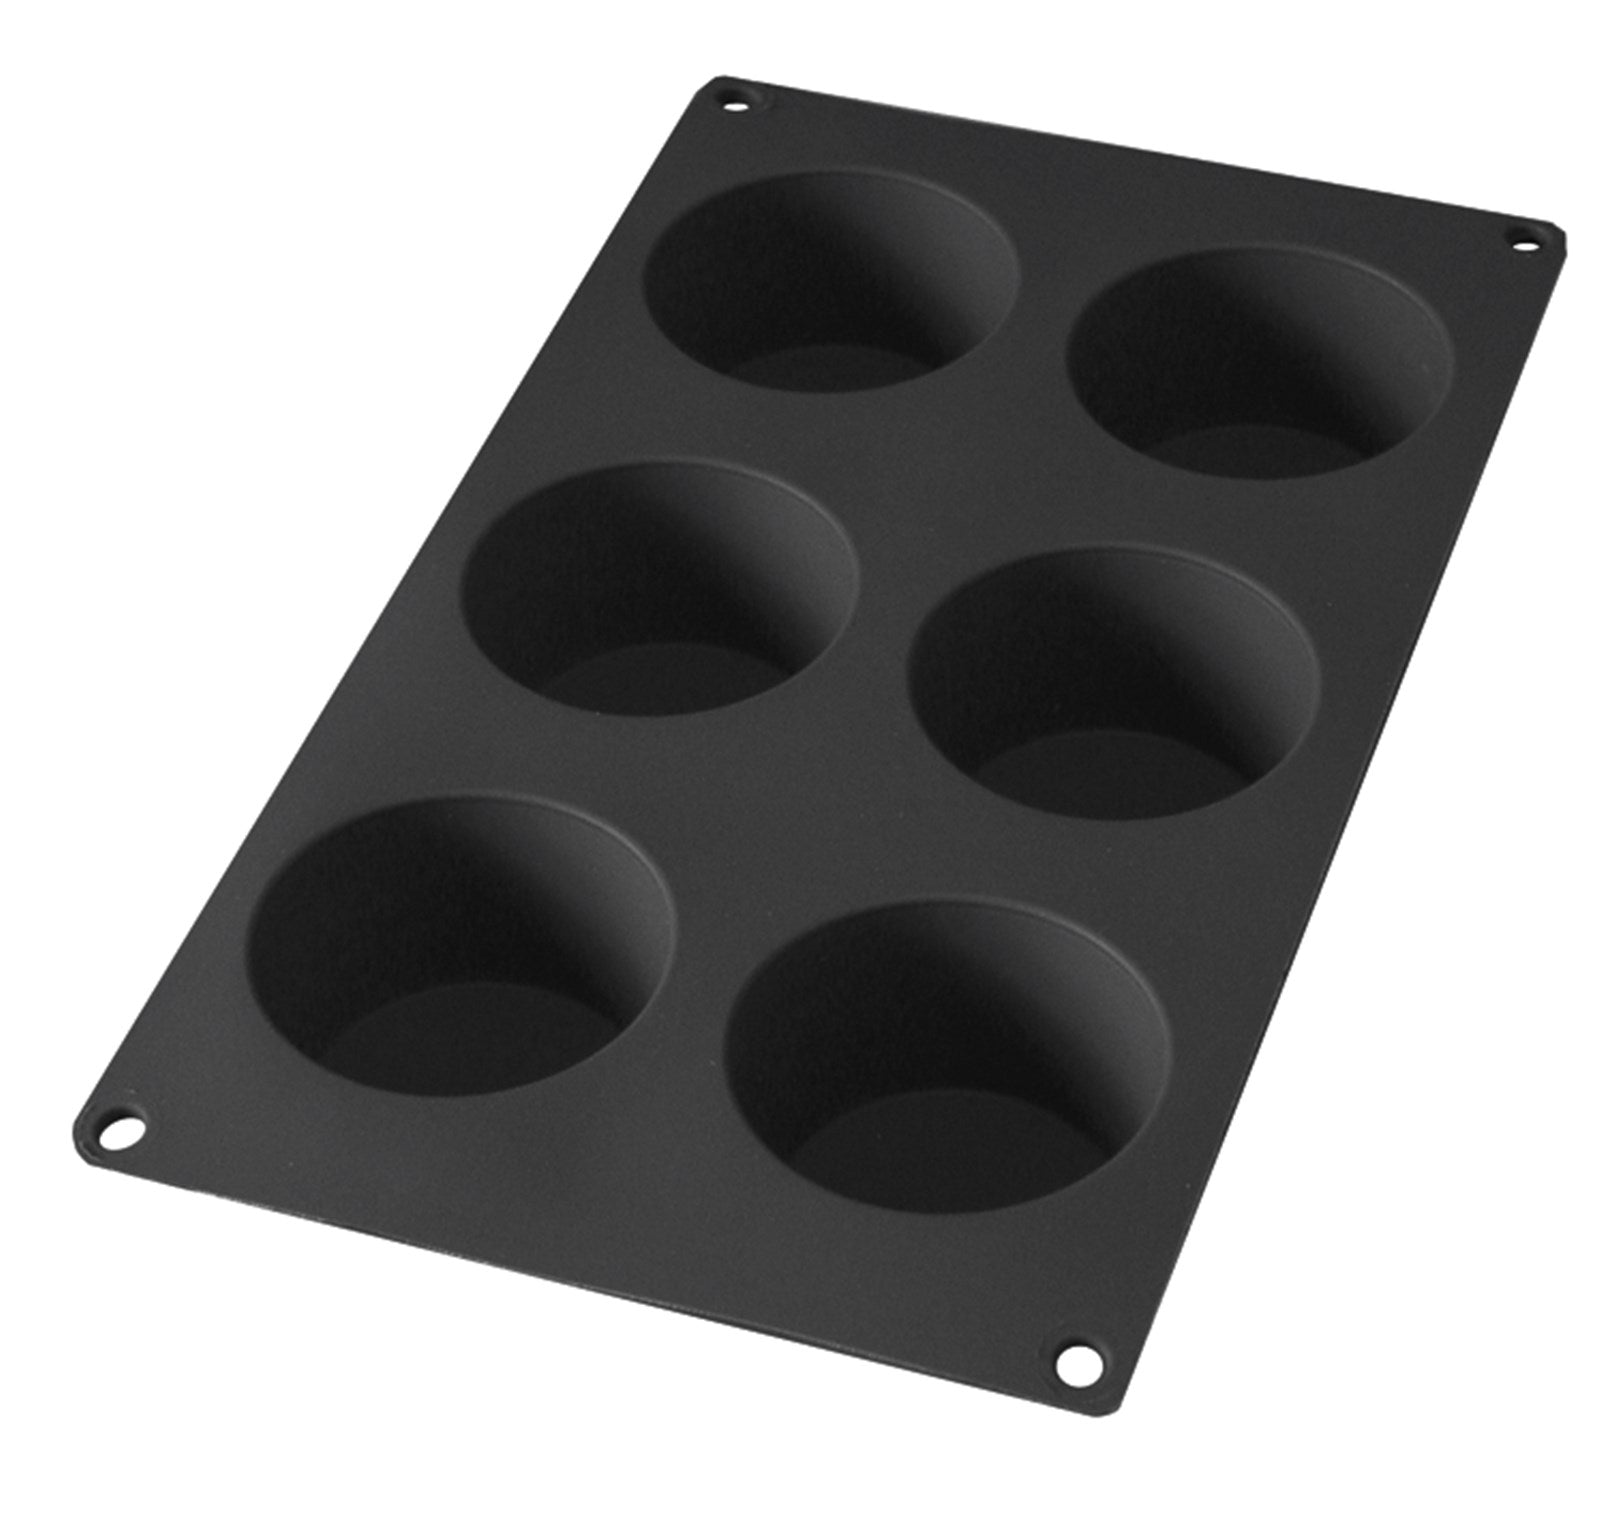 Backform 6er Muffin schwarz, Ø7 h: 4 cm in Schwarz präsentiert im Onlineshop von KAQTU Design AG. Backen ist von Lékué